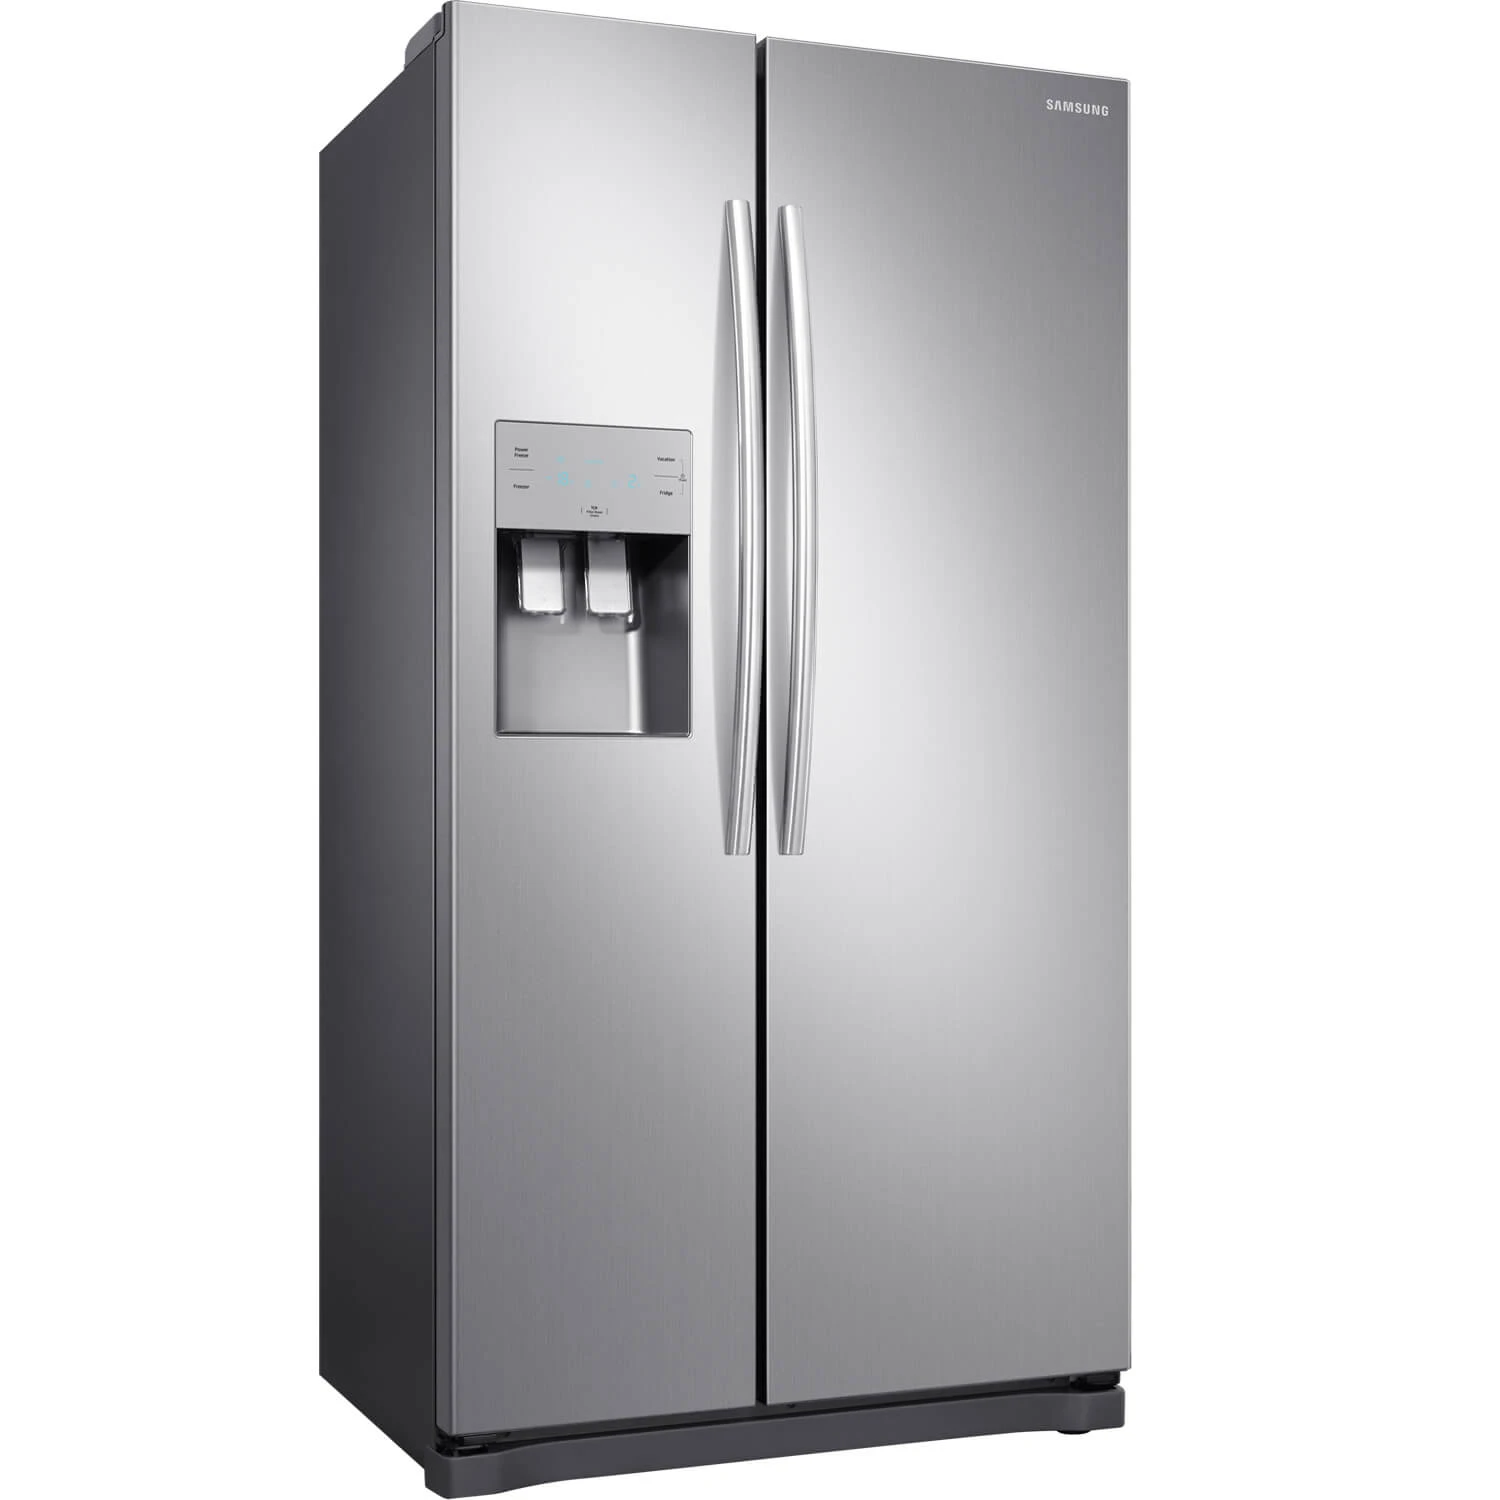 Como ativar o Power Freeze e o Power Cool do seu refrigerador